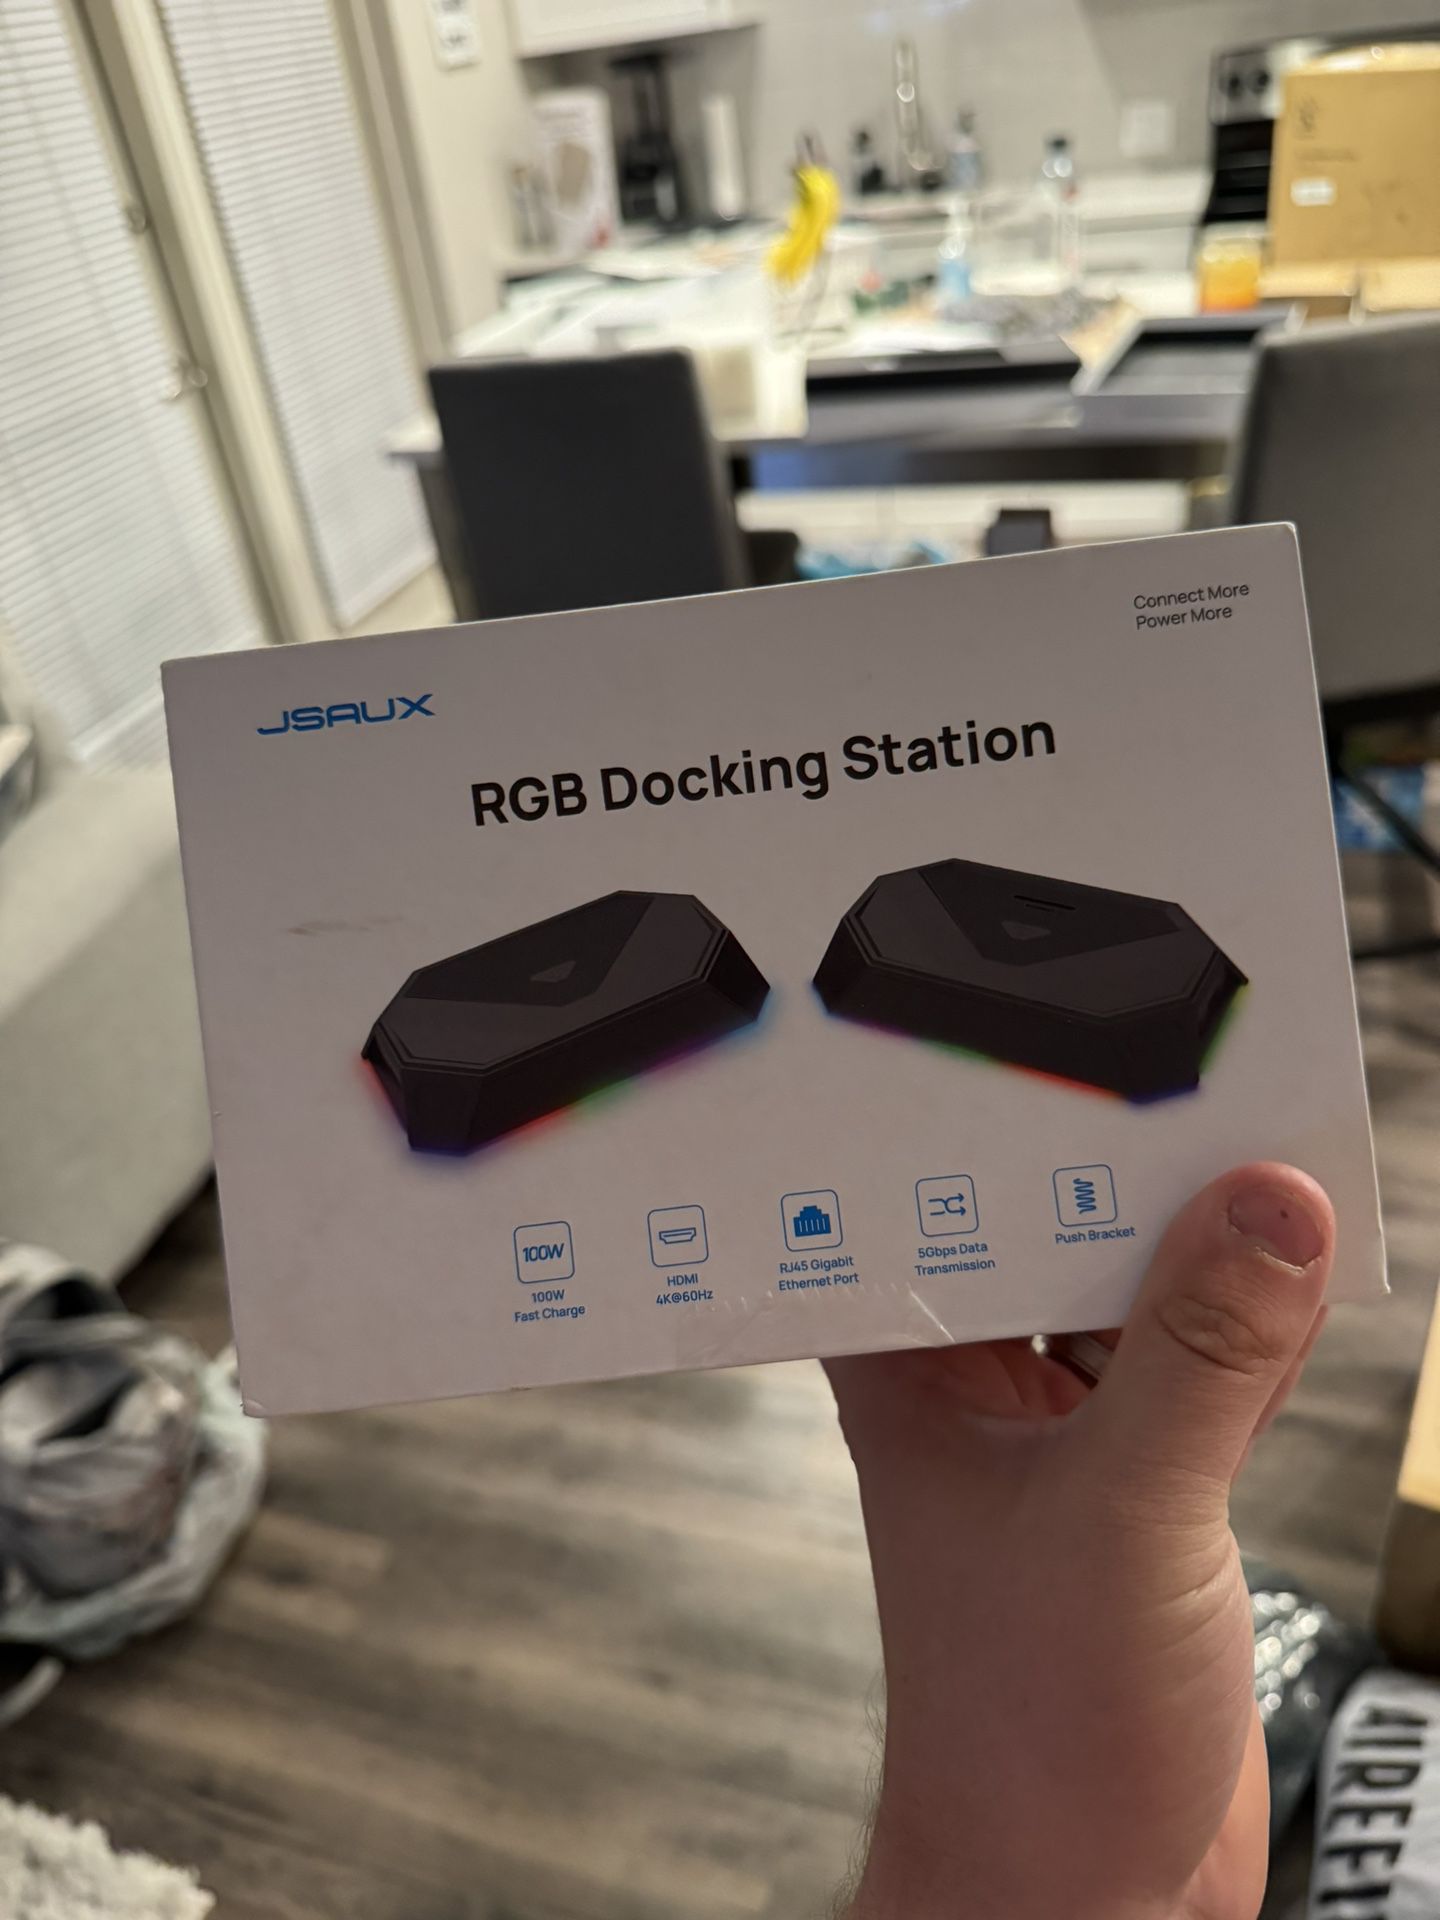 JSAUX RGB Docking Station for Steam Deck